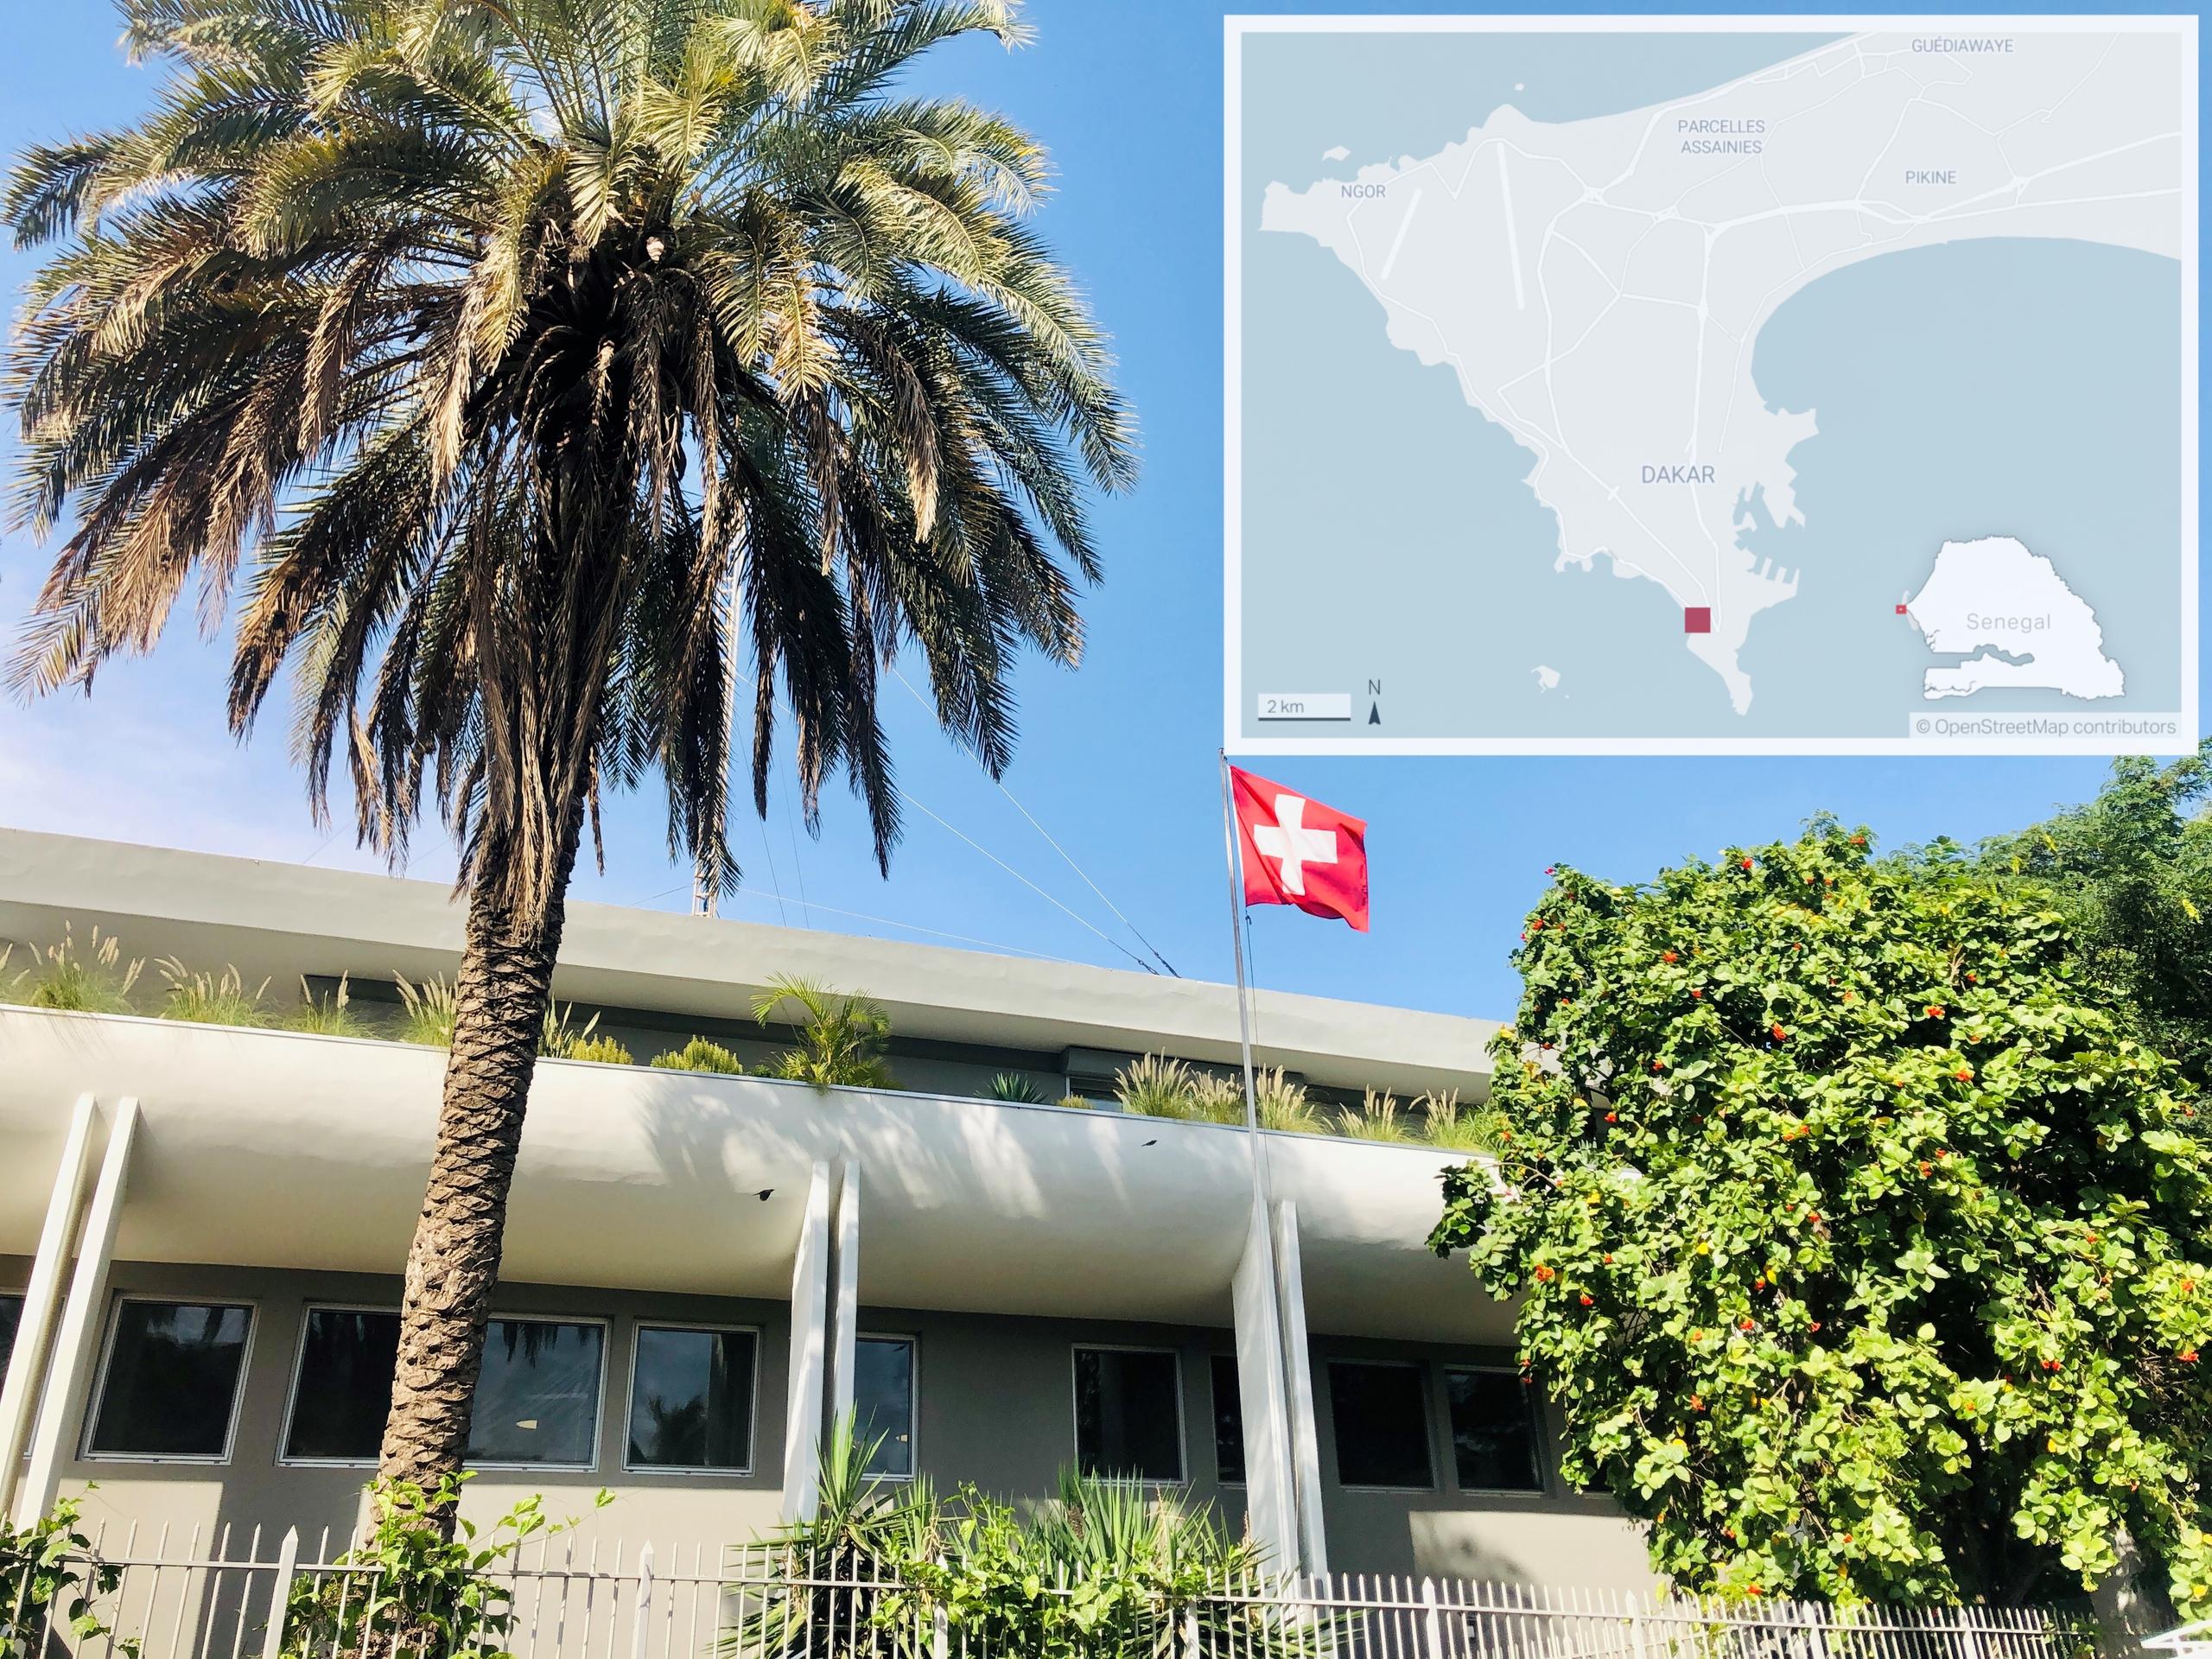 Vista esterna di edificio moderno con bandiera svizzera sul fronte e palma in giardino; a lato dell immagine, mappa del Senegal